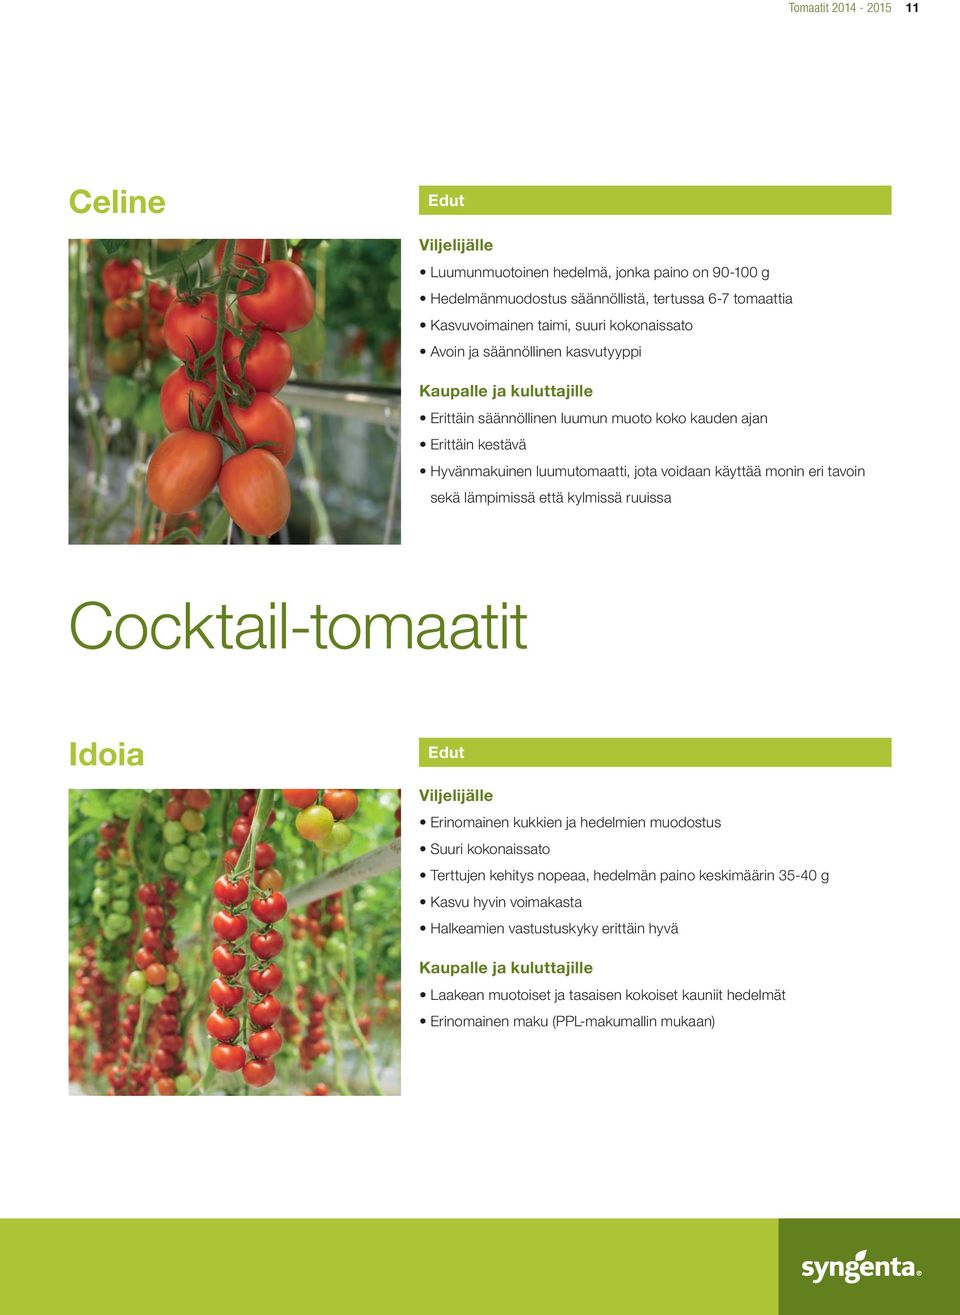 eri tavoin sekä lämpimissä että kylmissä ruuissa Cocktail-tomaatit Idoia Erinomainen kukkien ja hedelmien muodostus Suuri kokonaissato Terttujen kehitys nopeaa, hedelmän